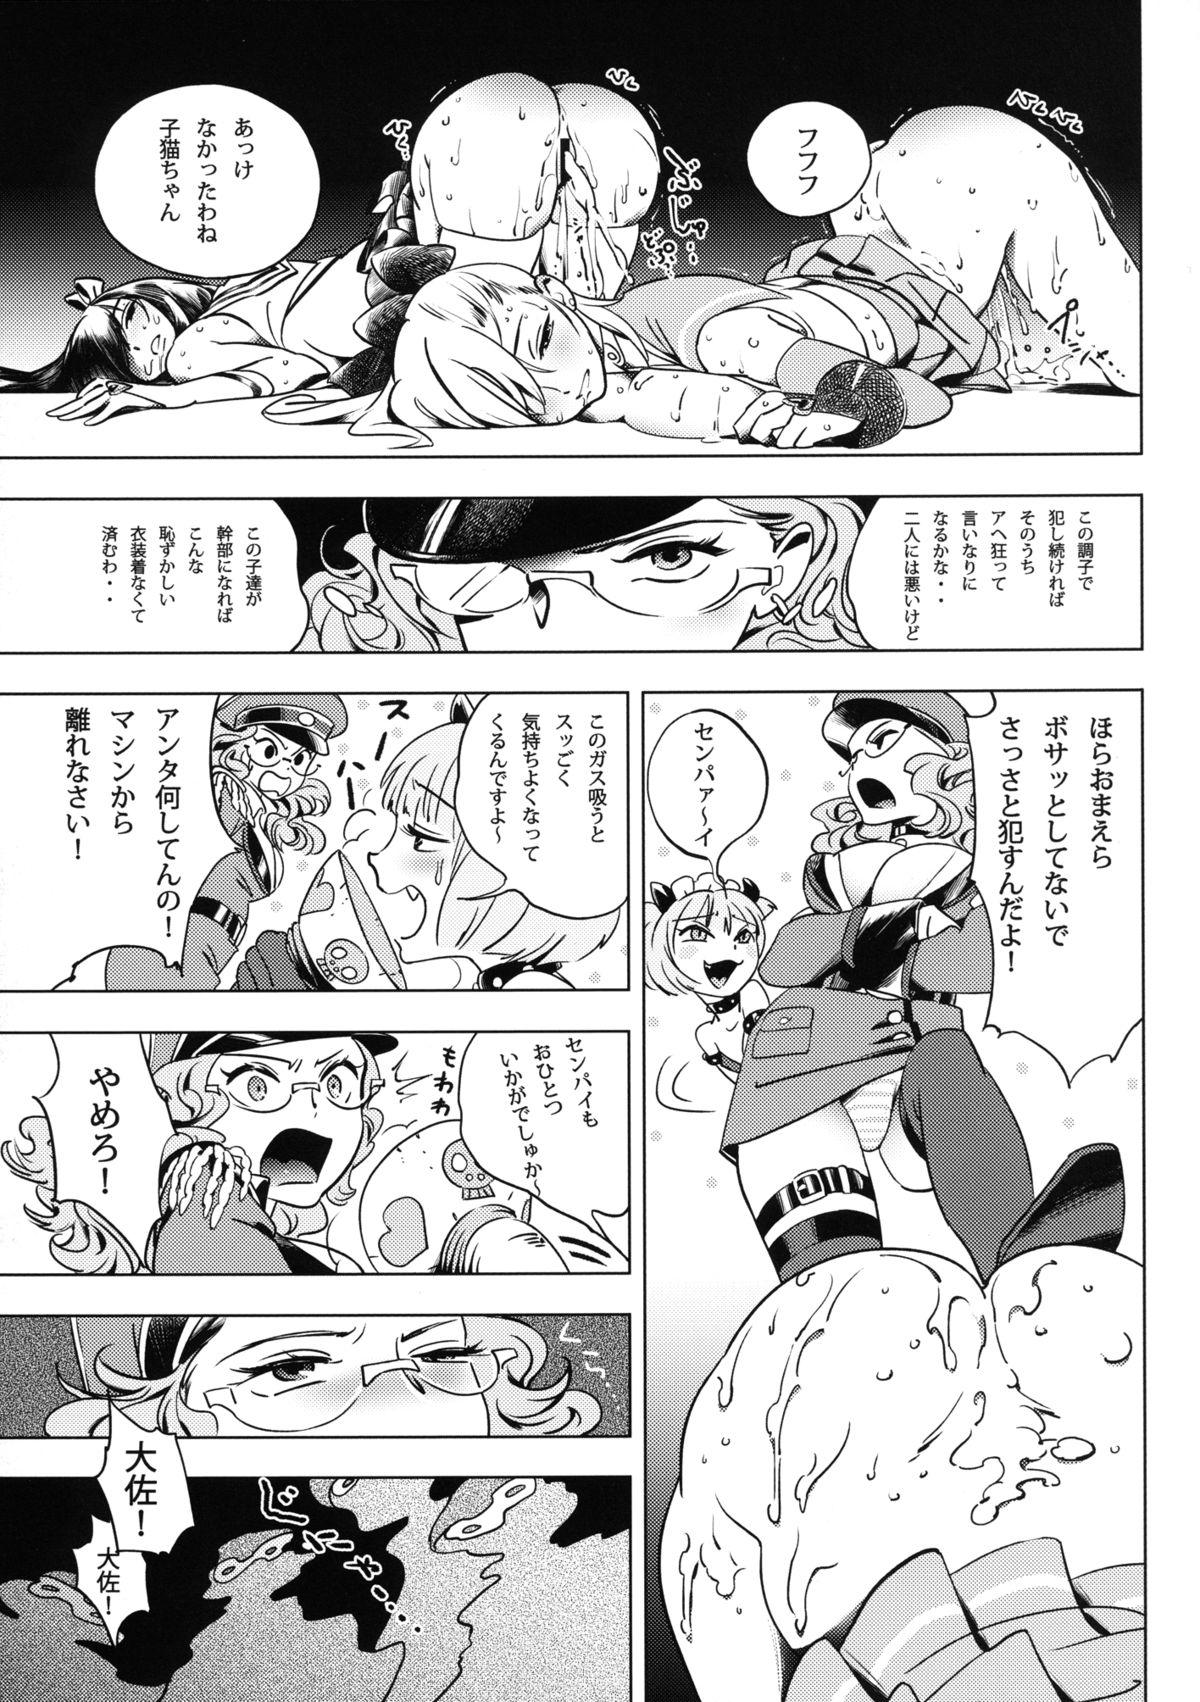 Futari wa SEXUAL HEROINE Max Heat! 13